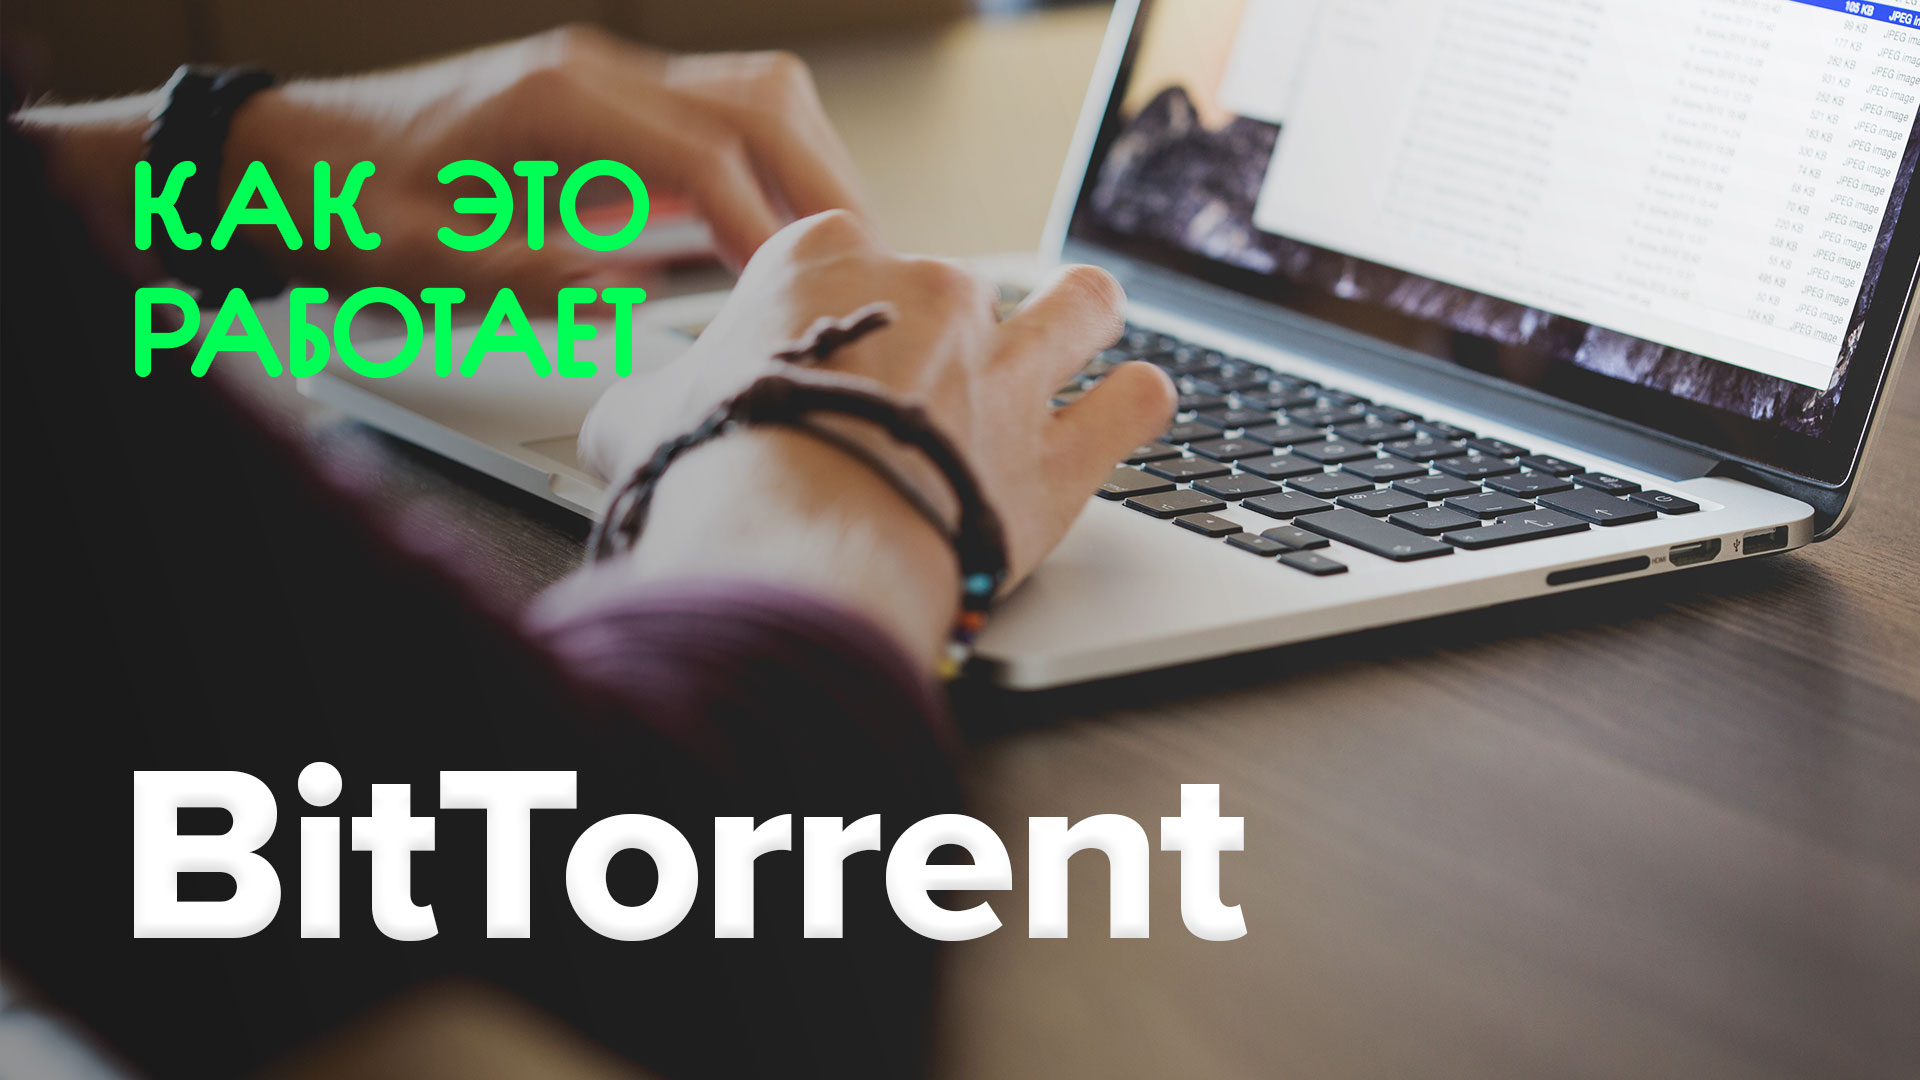 ¿Cómo funciona esto? | BitTorrent